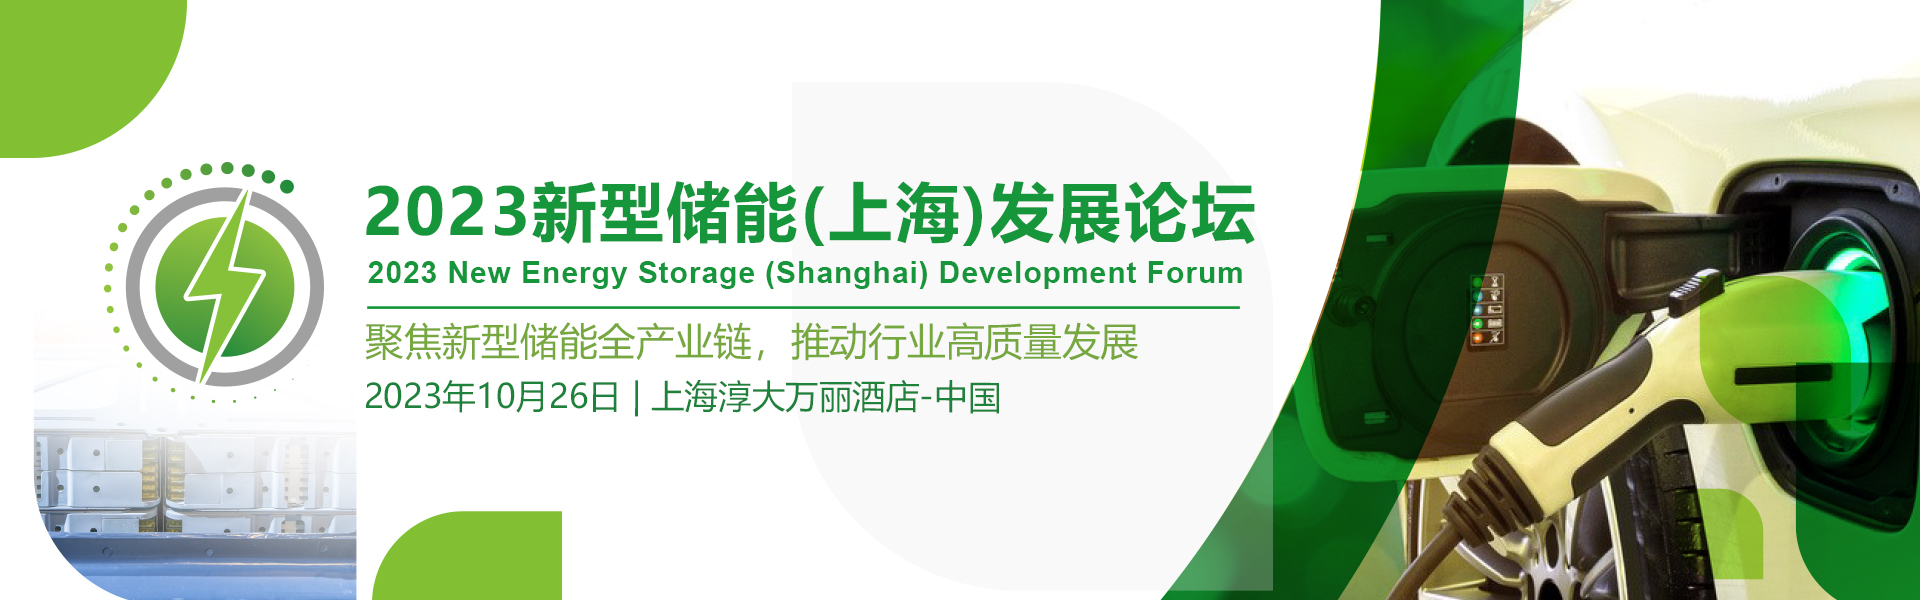 2023新型儲能(上海)發展論壇